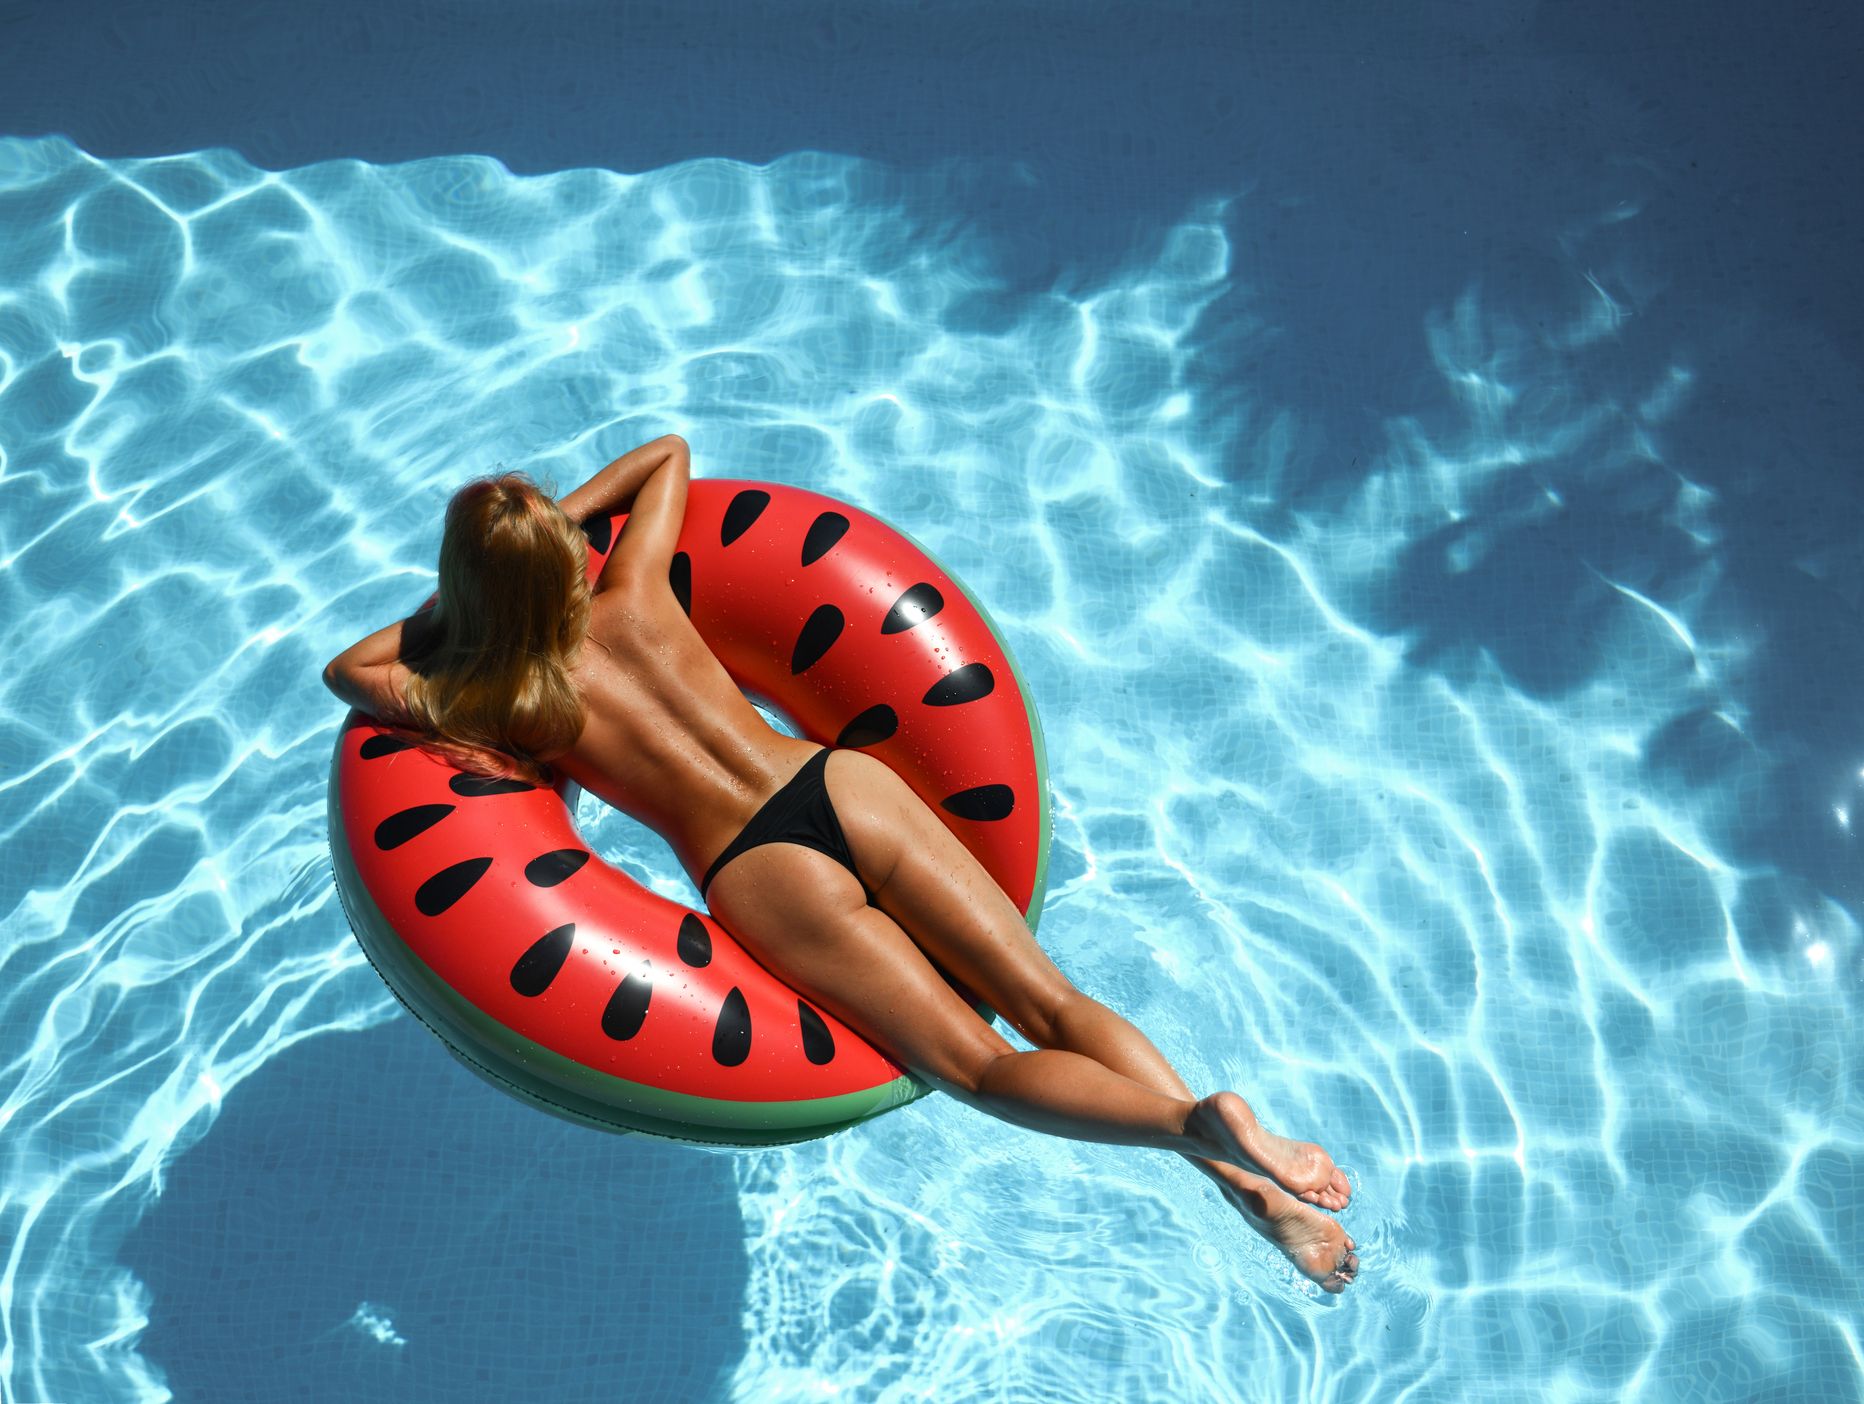 Topless naine kummirõngal basseinis. Pilt on illustreeriv